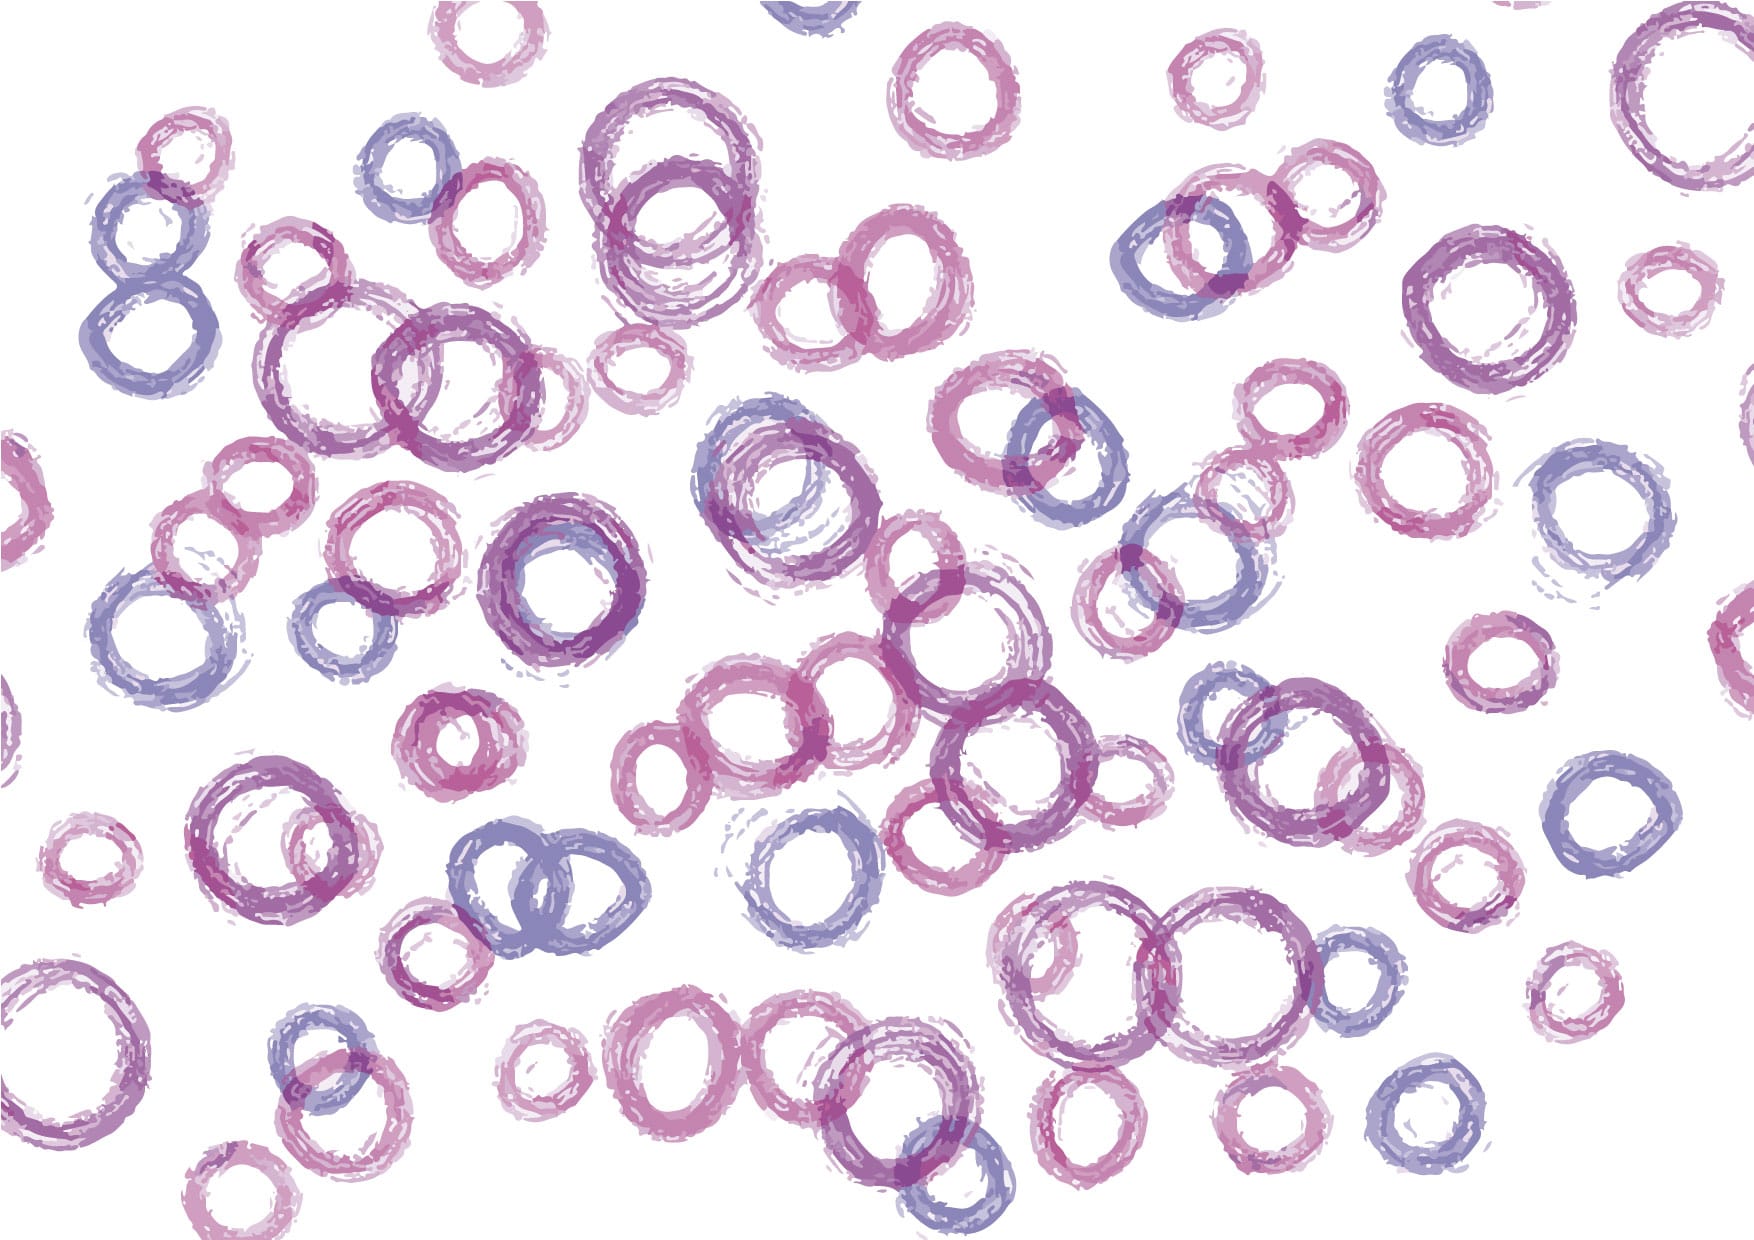 可愛いイラスト無料 手書き 泡 紫色 背景 Free Illustration Handwritten Bubble Purple Background 公式 イラストダウンロード